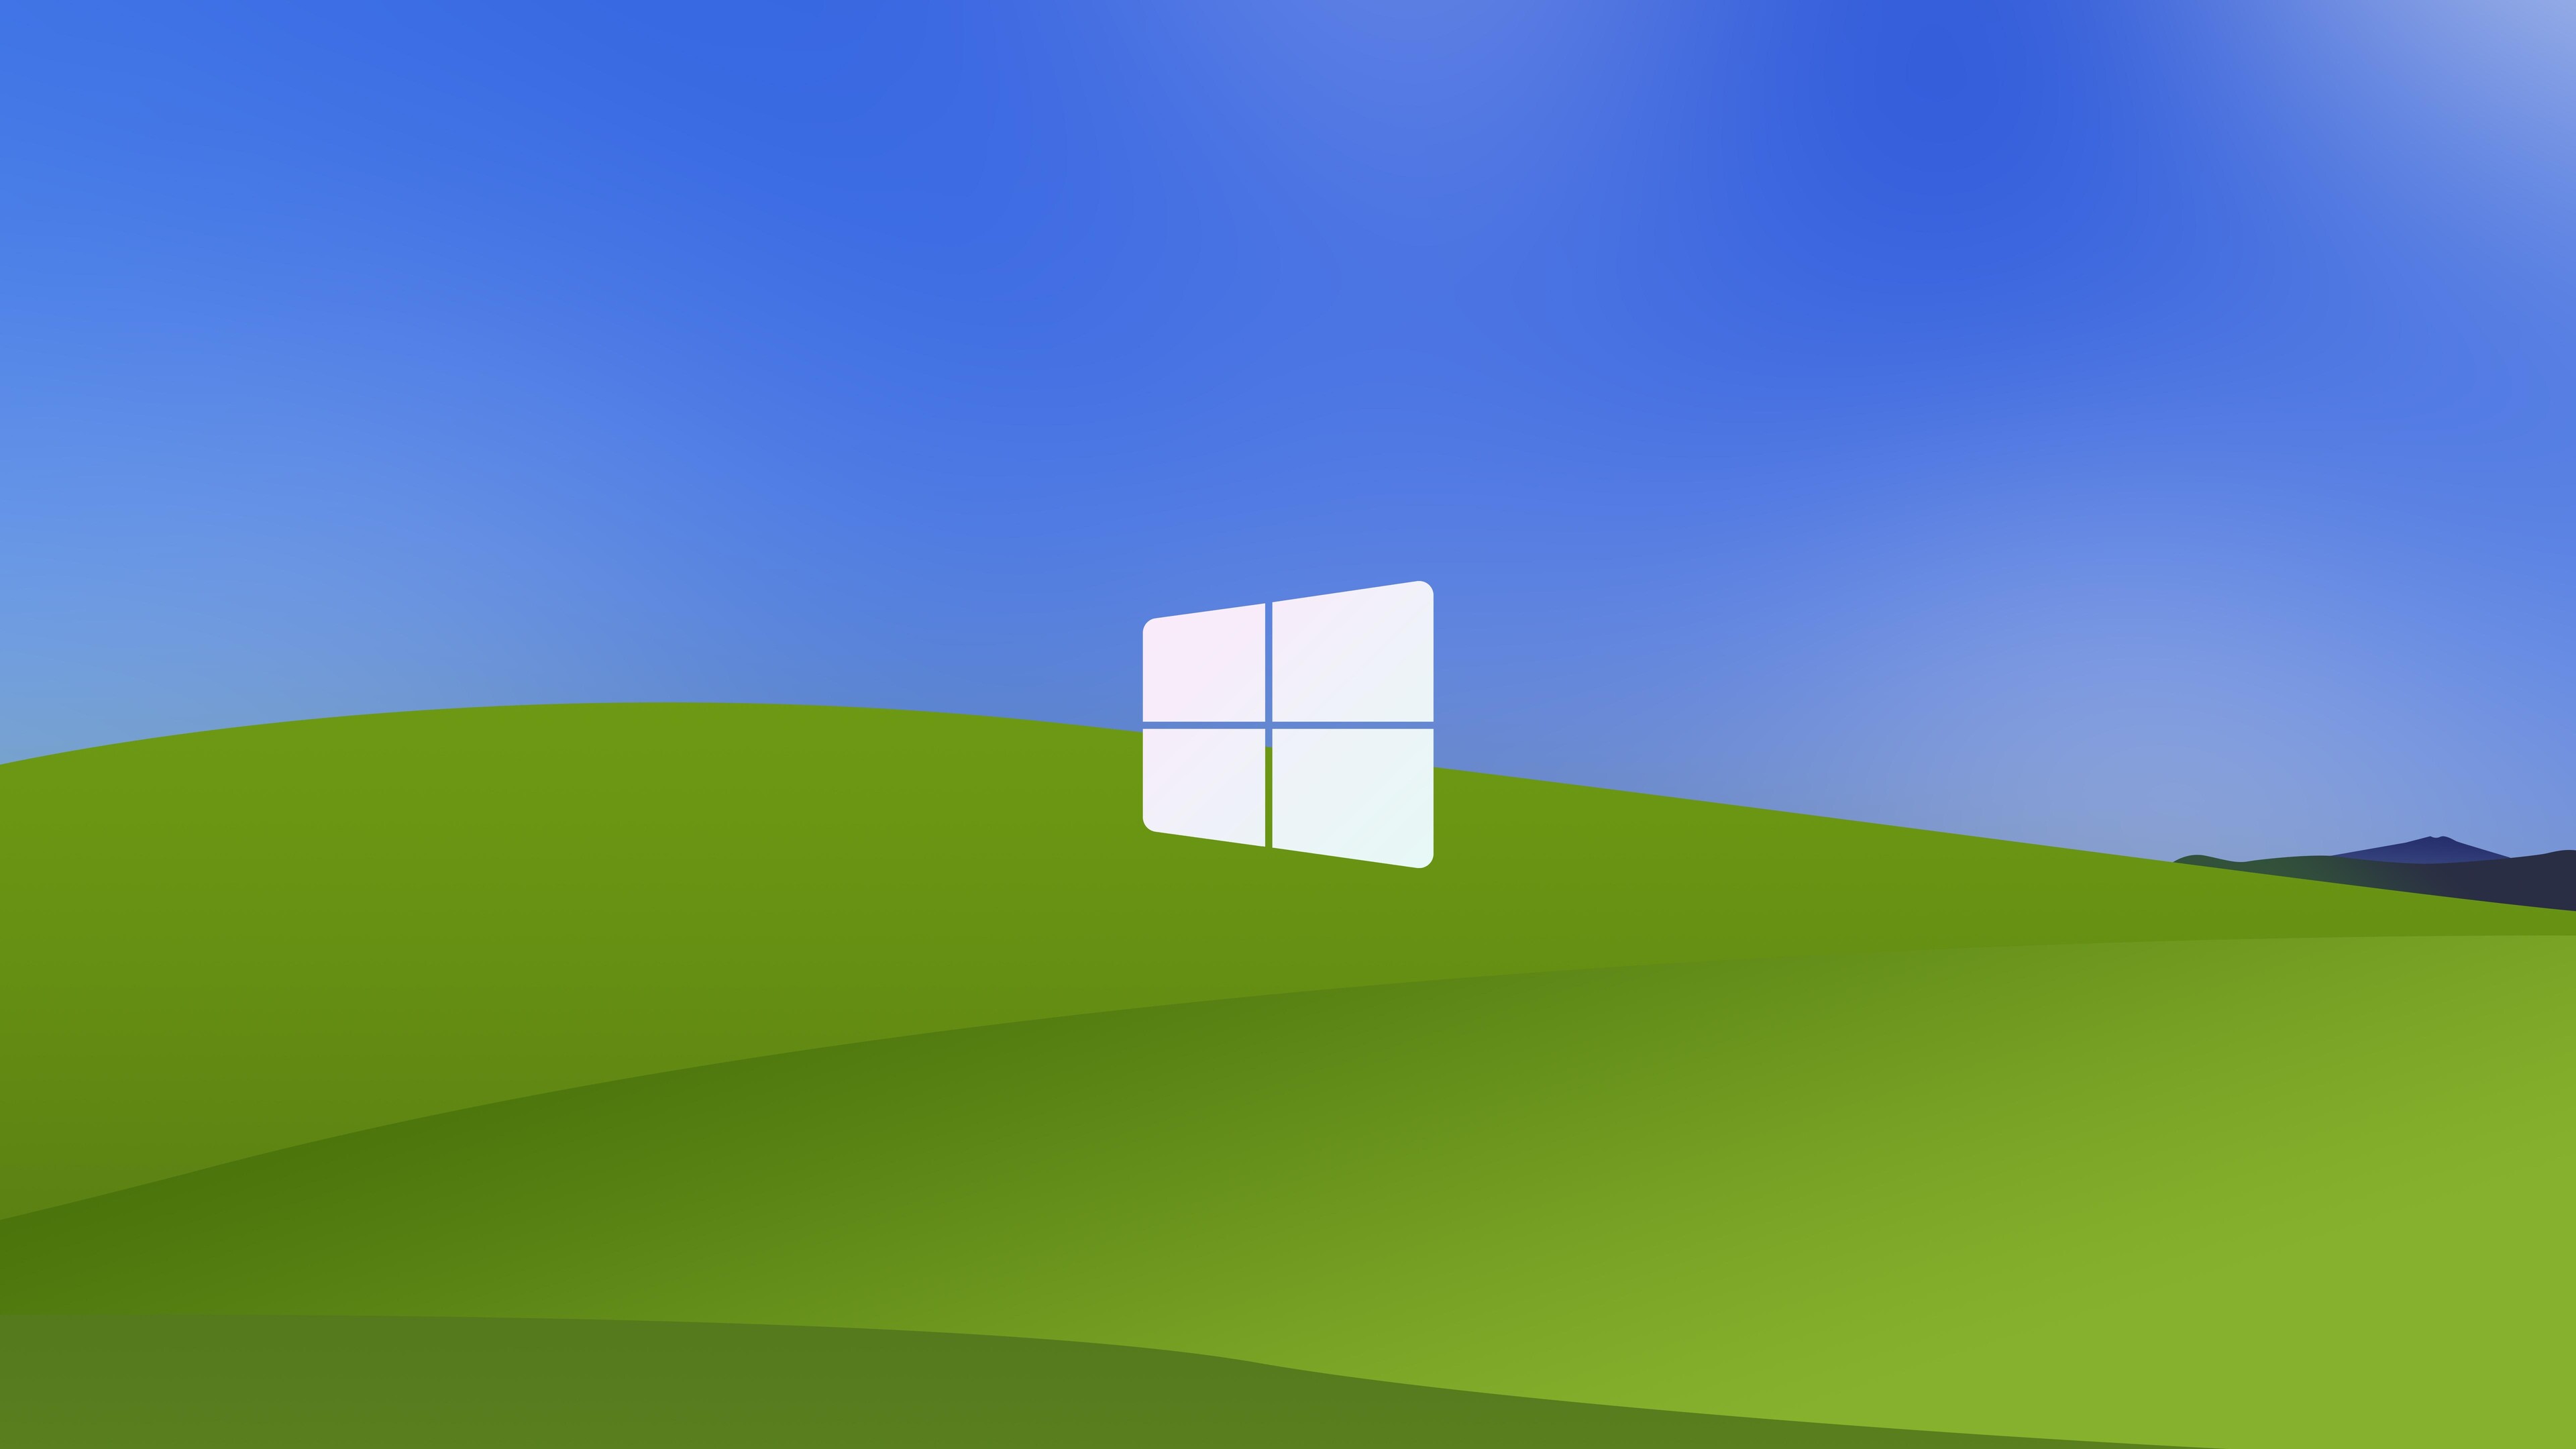 Logo Windows XP - Logo nổi tiếng của hệ điều hành Windows XP. Được tạo ra bởi nghệ sĩ Susan Kare, logo này mang lại sự ấn tượng mạnh mẽ với hình ảnh tam giác ghép lại với nhau. Nếu bạn là một người yêu công nghệ thì không thể bỏ qua hình ảnh tuyệt vời này.